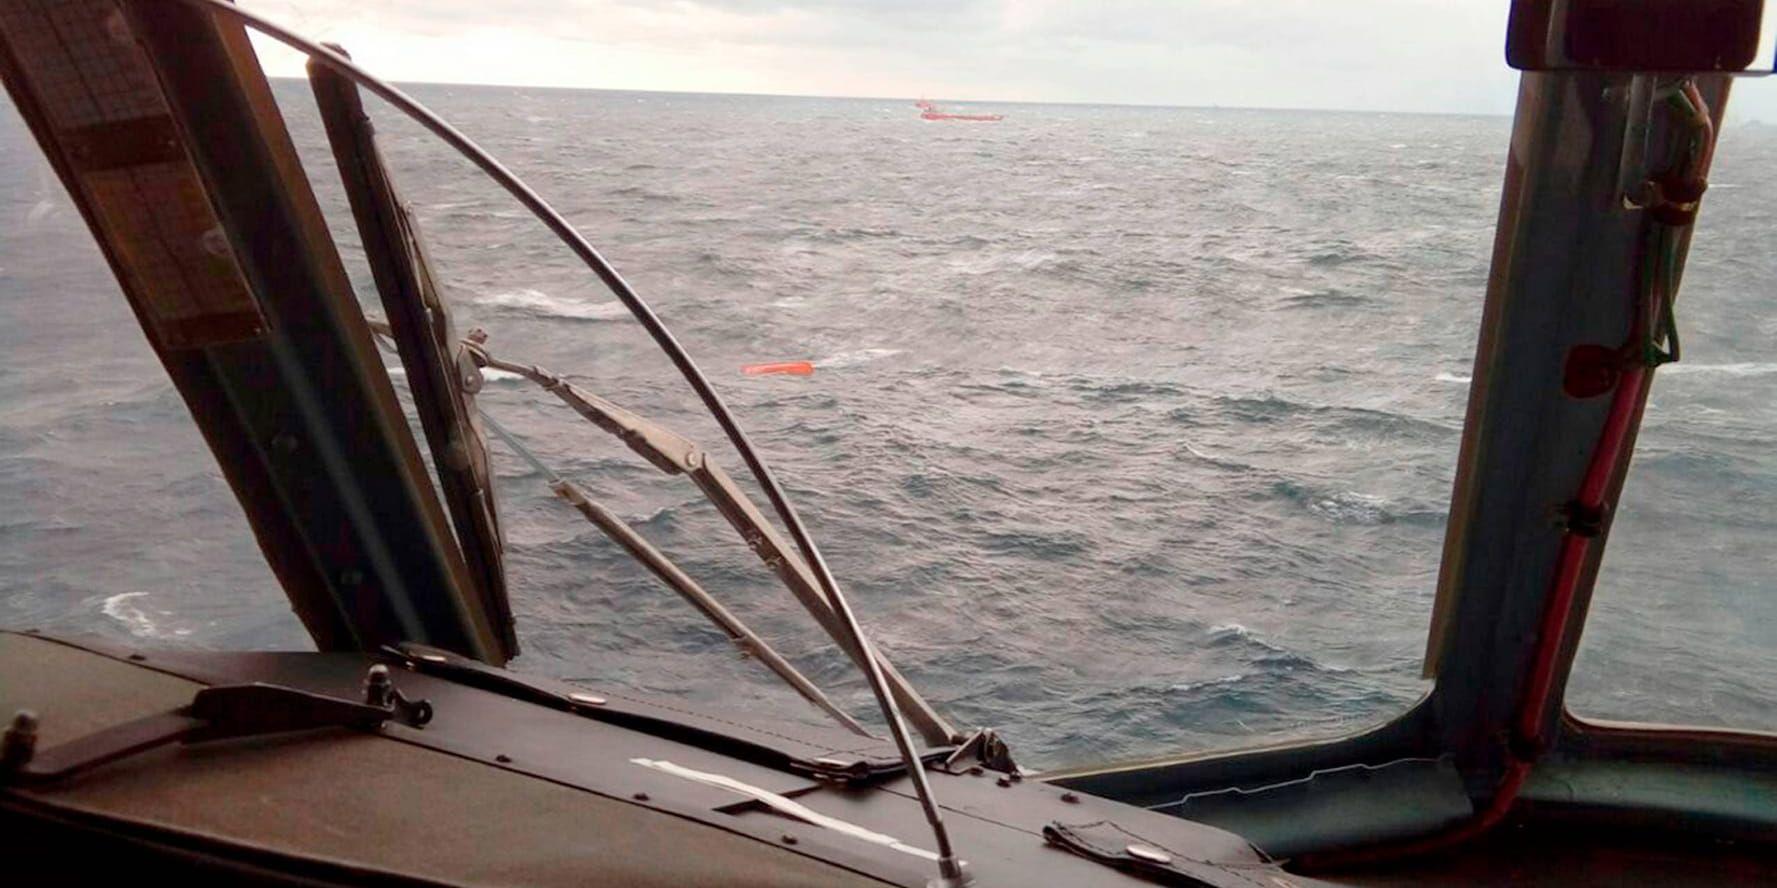 Svarta havet är mycket tättrafikerat, och olyckor är vanliga. Bilden är från räddningsinsatsen efter en kapsejsning tidigare i april.